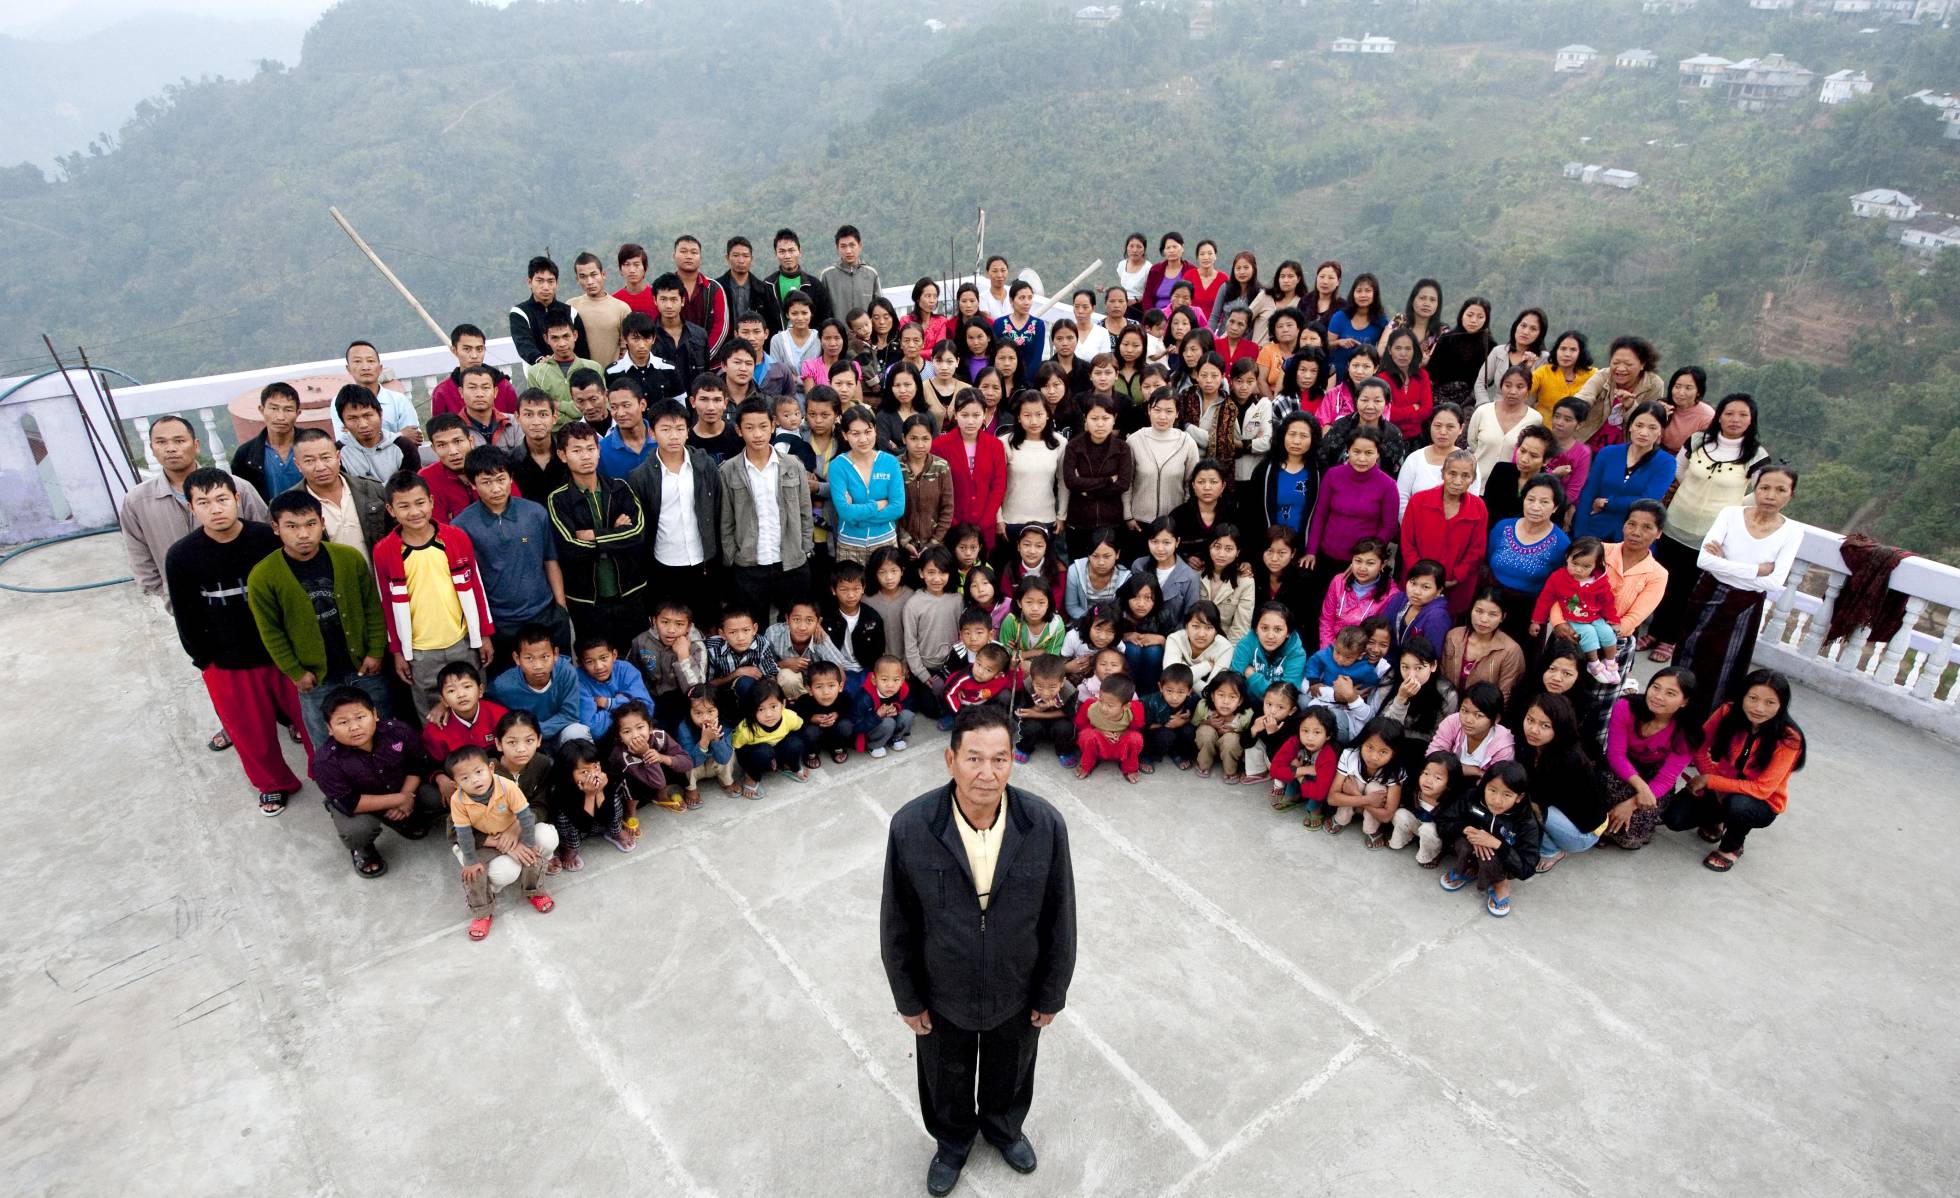 Conoce a la familia más grande del mundo … sus 180 miembros viven bajo este miso techo (fotos)